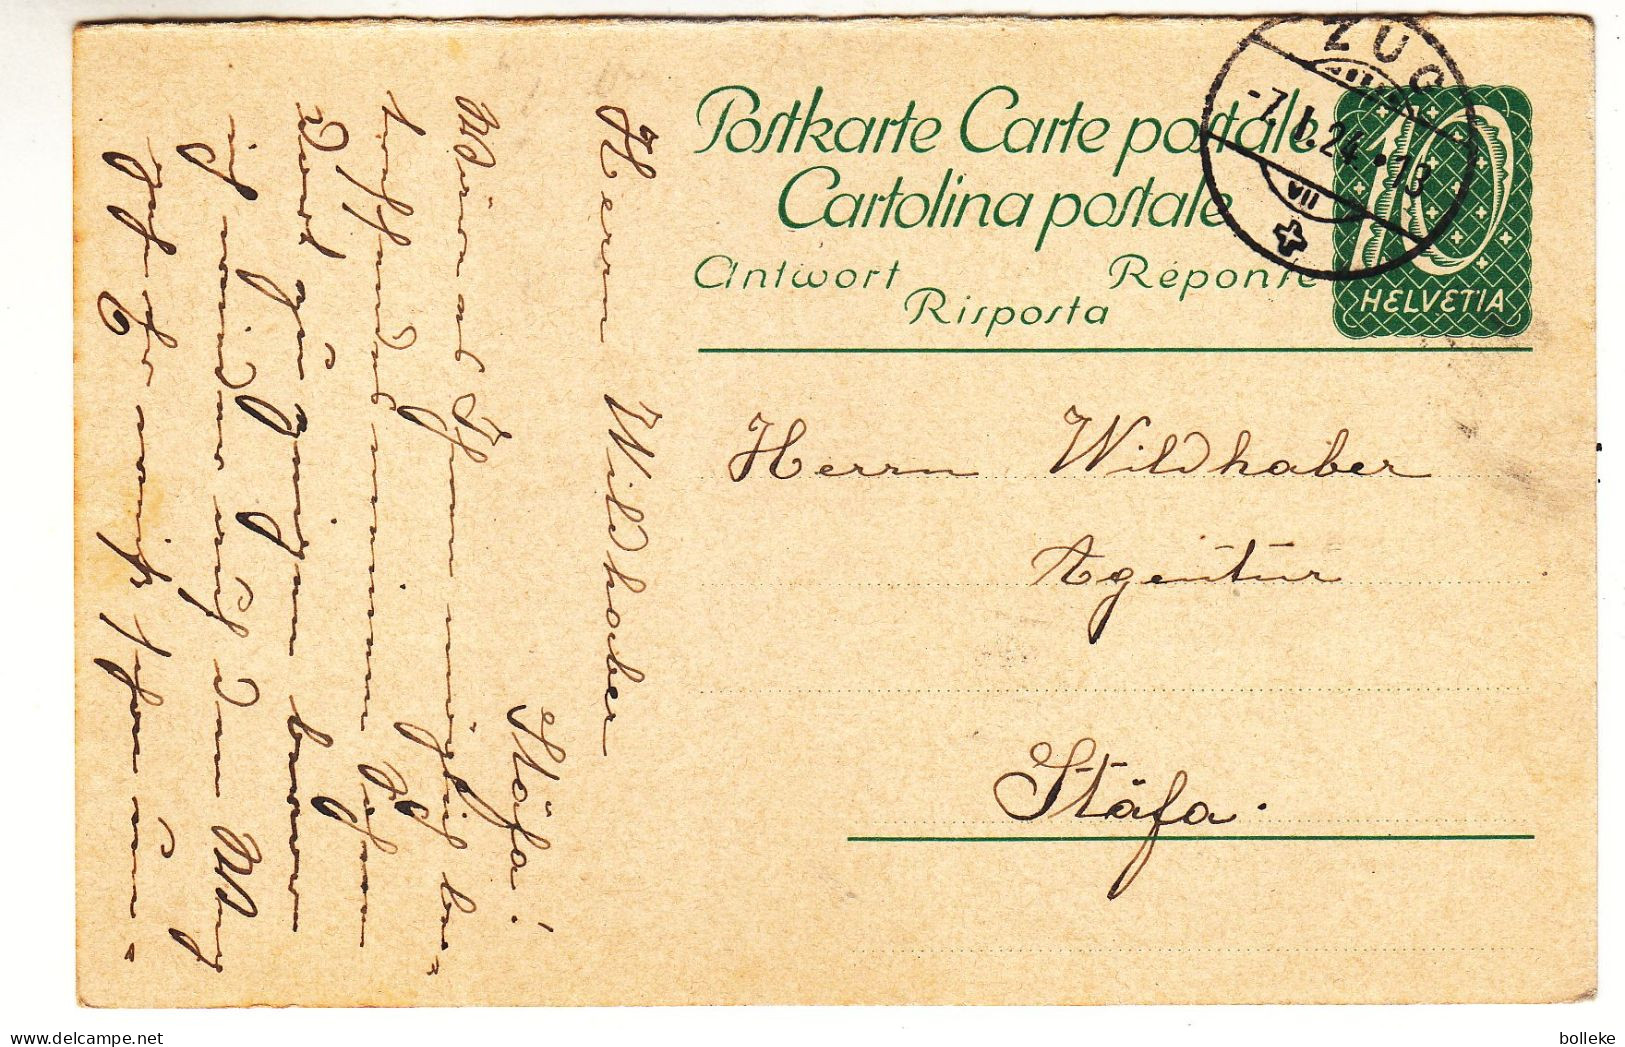 Suisse - Carte Postale De 1924 - Entier Postal - Oblit Zug - Exp Vers Stäfa - - Covers & Documents